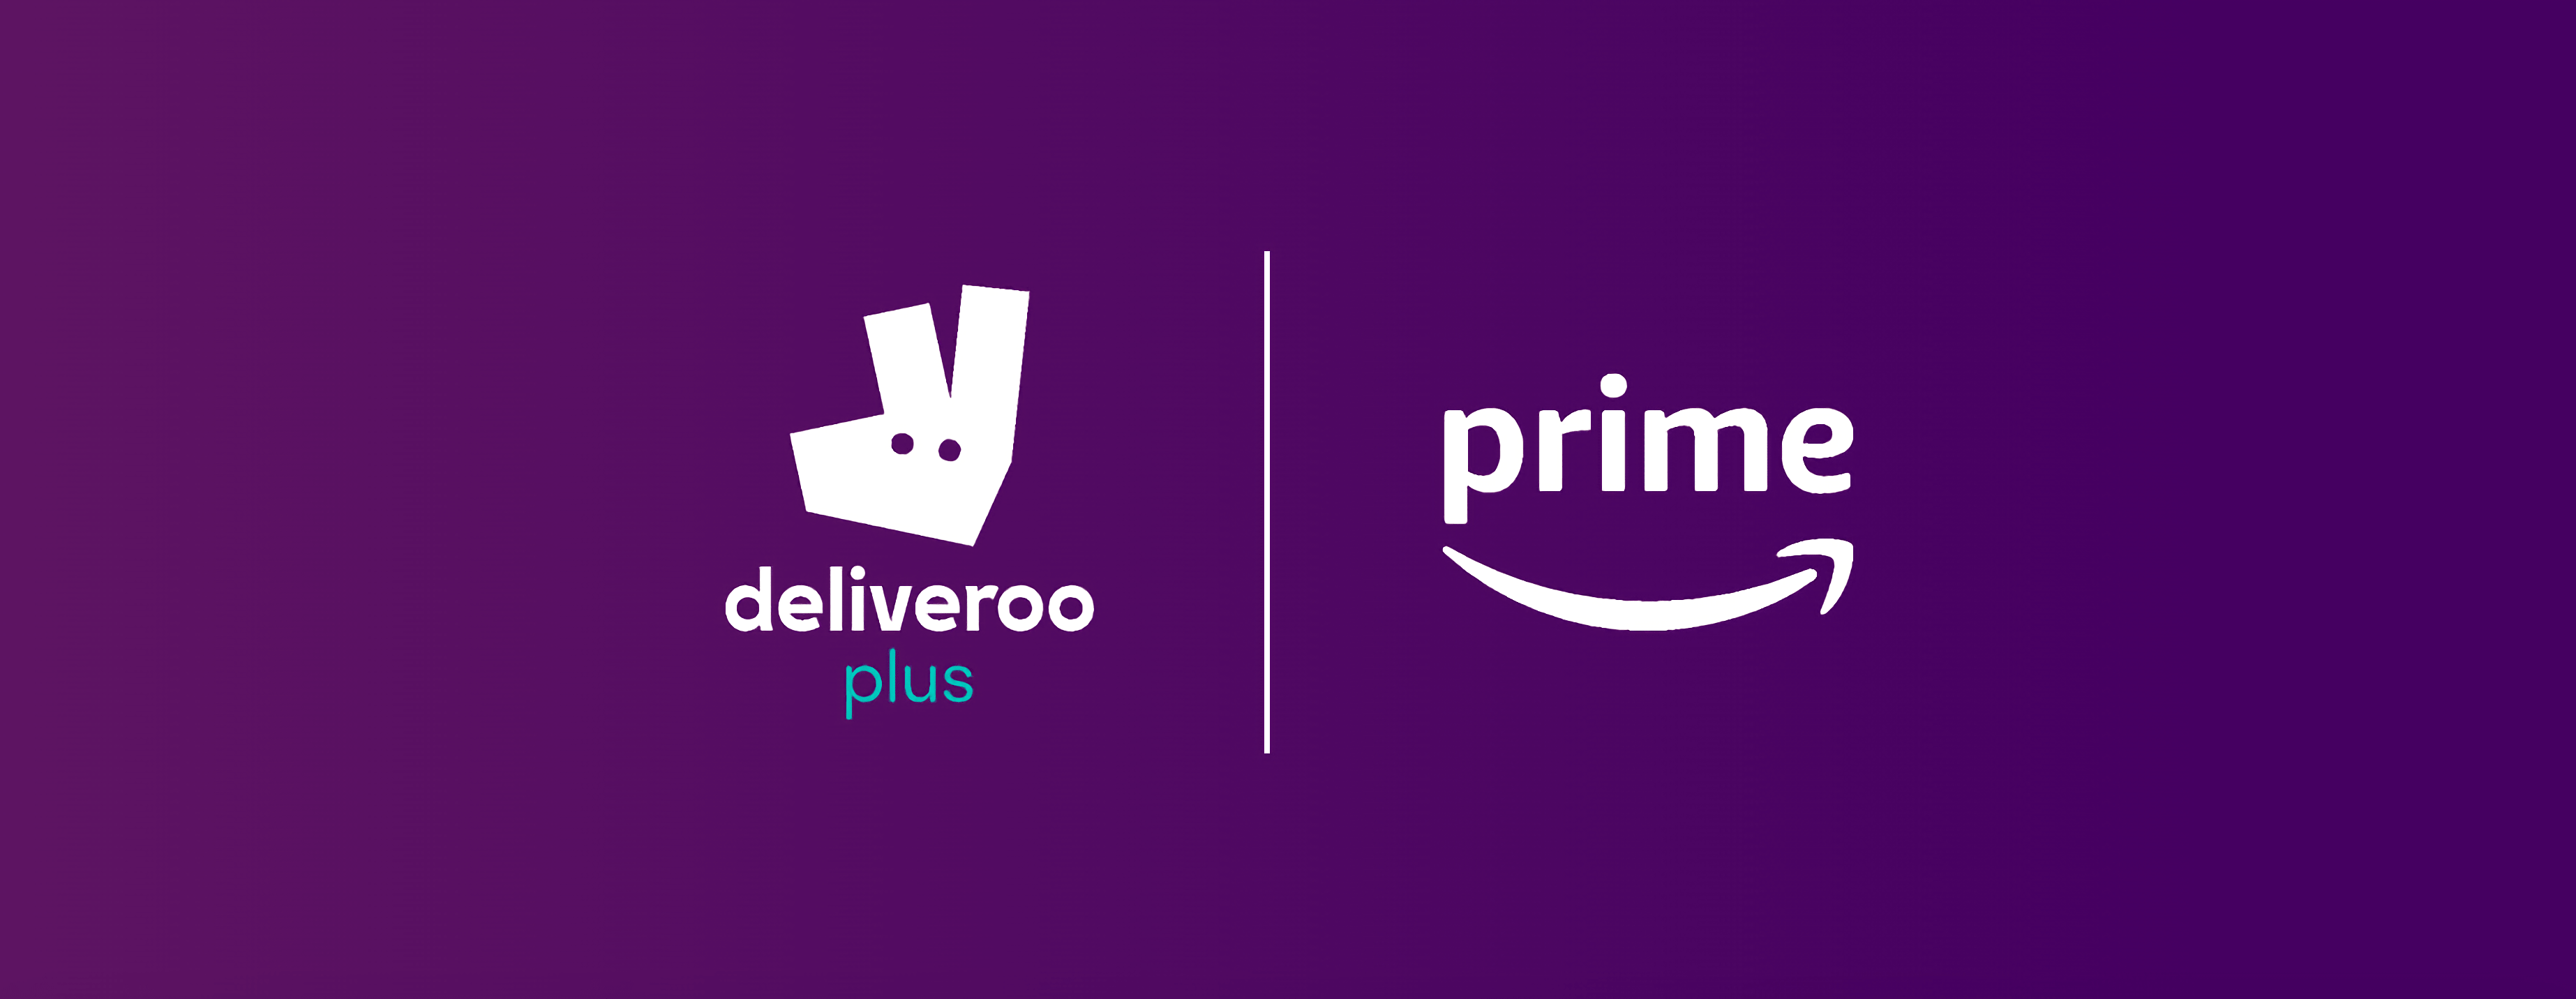 Deliveroo X Amazon